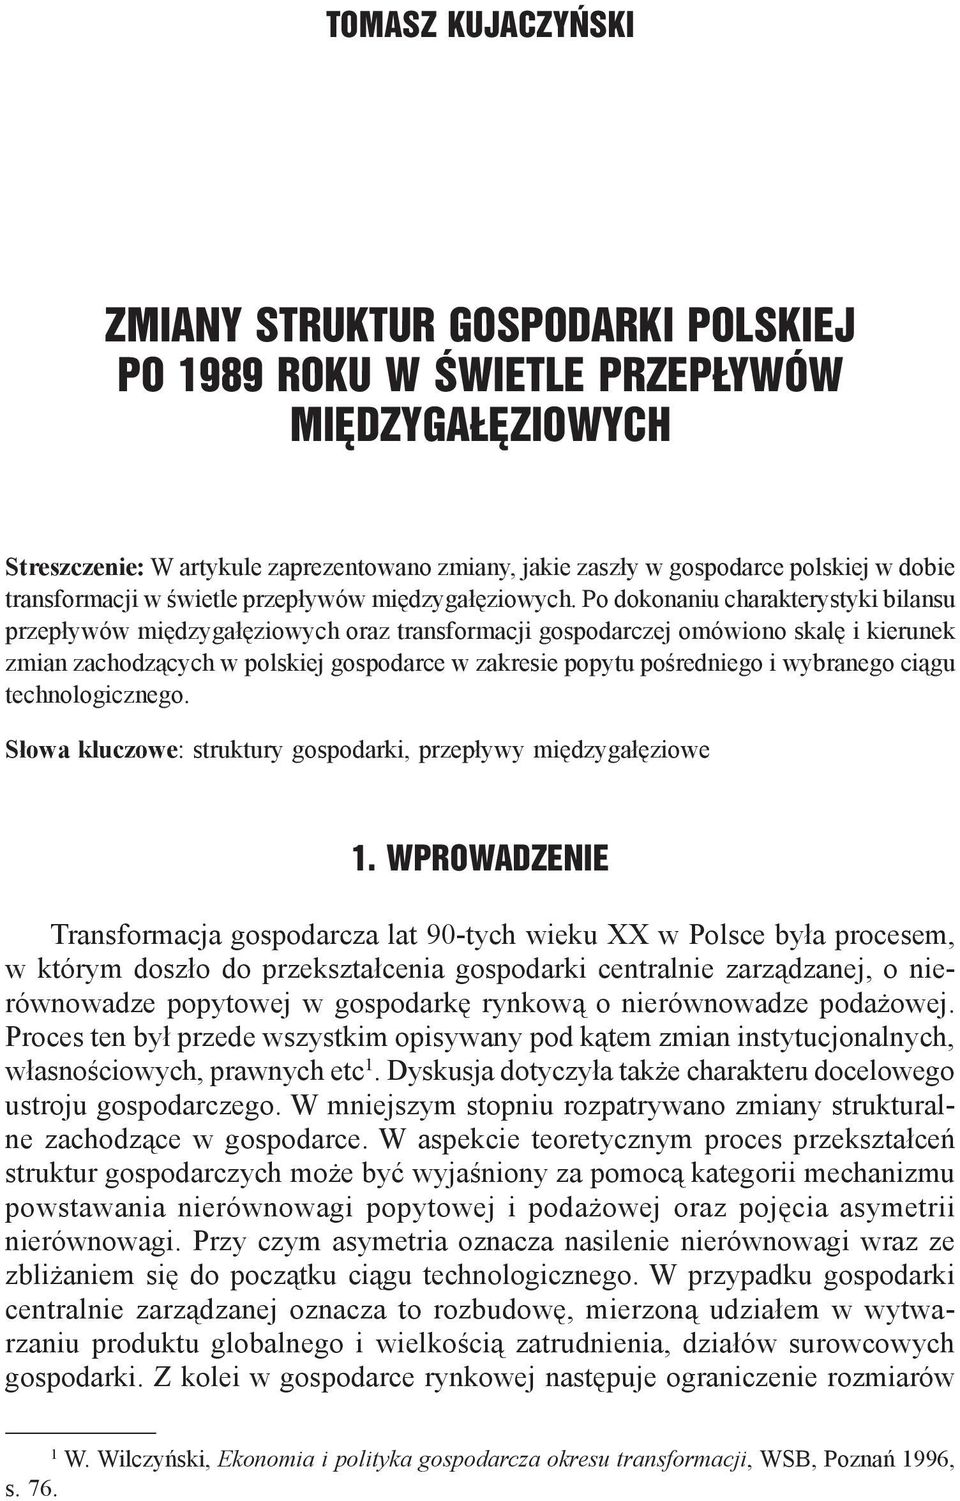 Po dokonaniu charakterystyki bilansu przepływów międzygałęziowych oraz transformacji gospodarczej omówiono skalę i kierunek zmian zachodzących w polskiej gospodarce w zakresie popytu pośredniego i